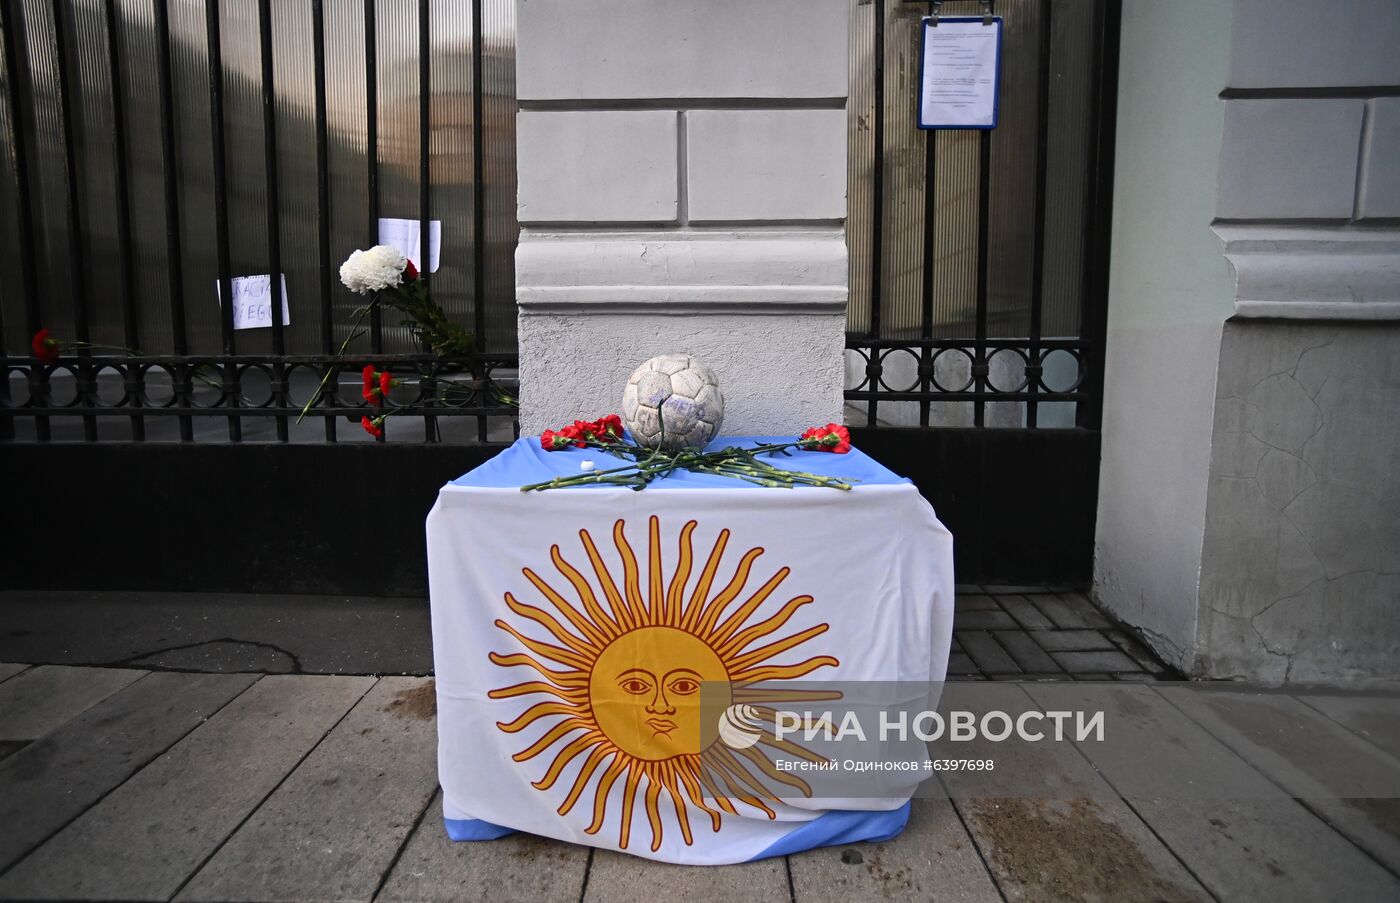 Цветы в память о Д. Марадоне у посольства Аргентины в Москве